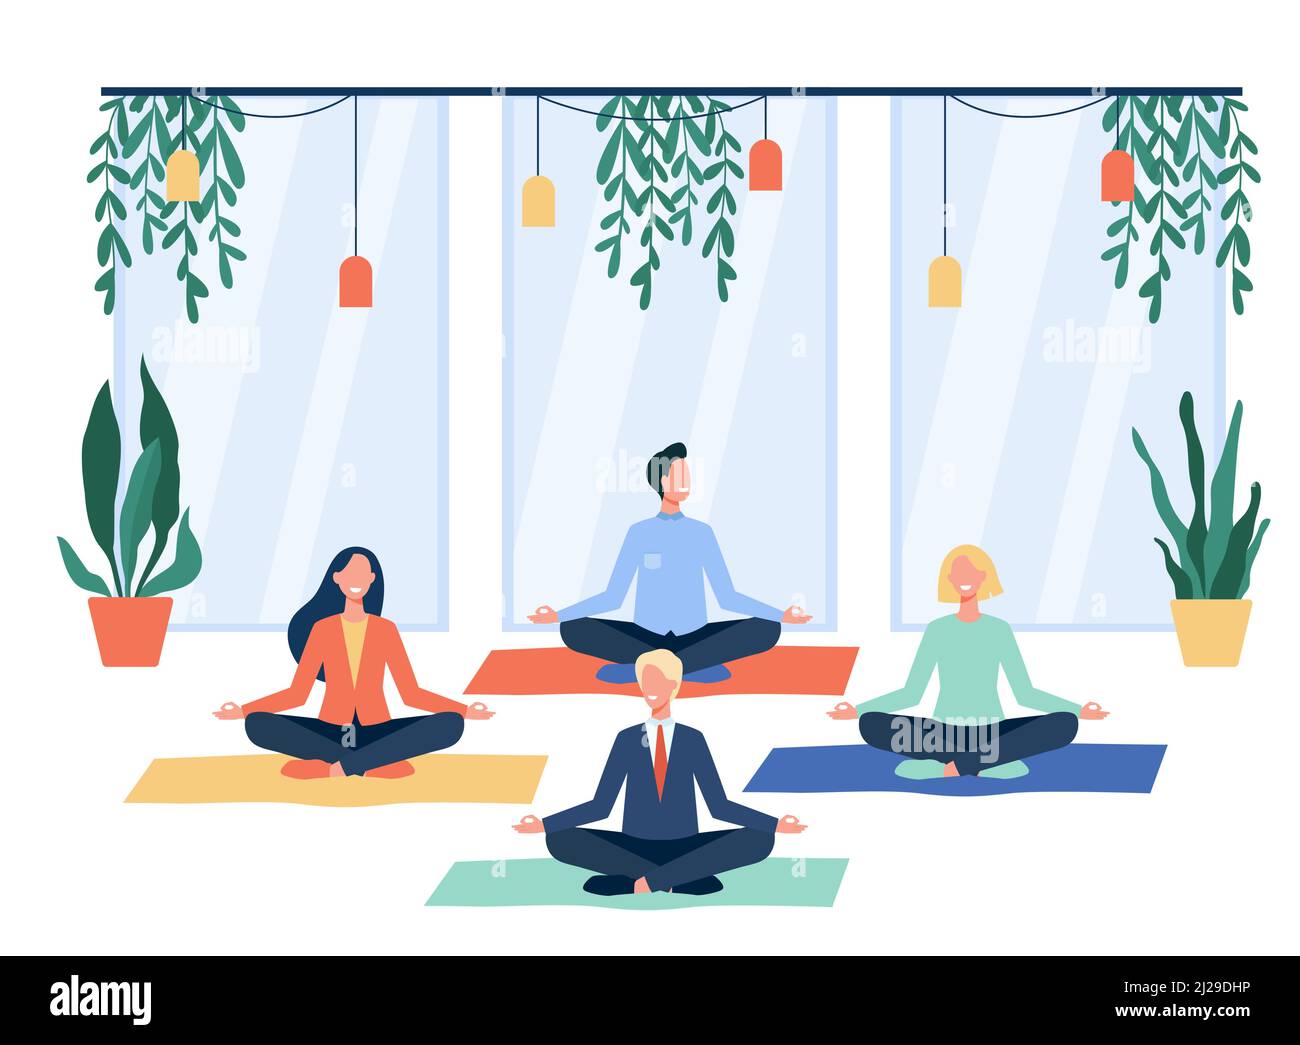 Les employés de bureau heureux faisant du yoga, assis dans le lotus posent sur des tapis et méditer. Les employés s'exerçant pendant leur pause. Pour la pleine conscience, le soulagement du stress, la vie Illustration de Vecteur